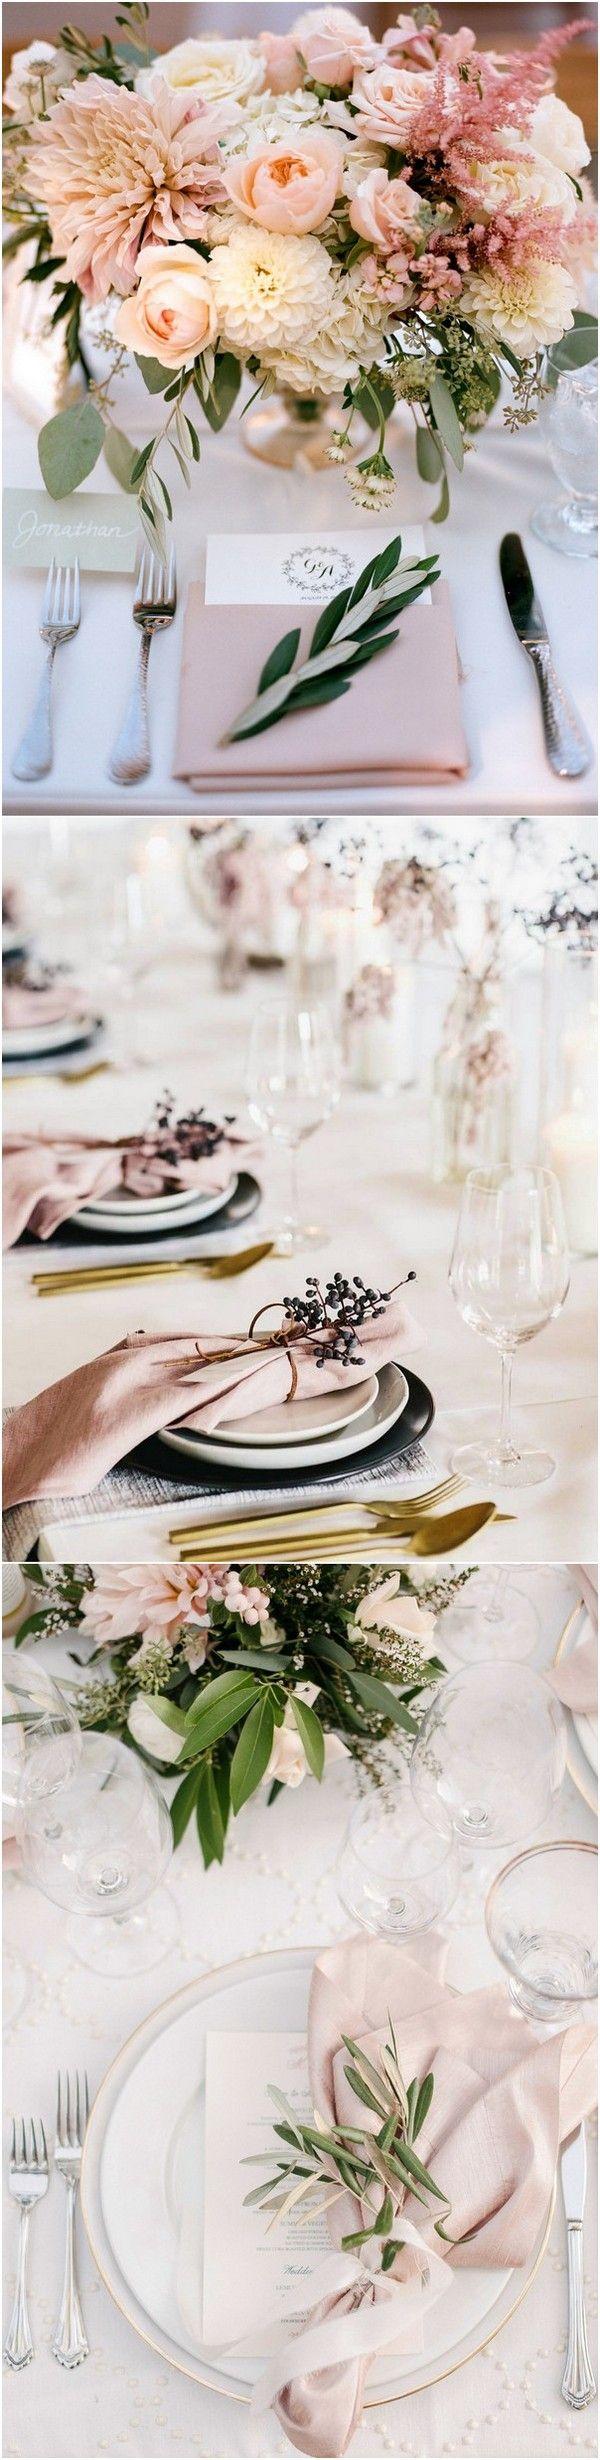 Hochzeit - Top 15 So Elegant Wedding Table Setting Ideas For 2018